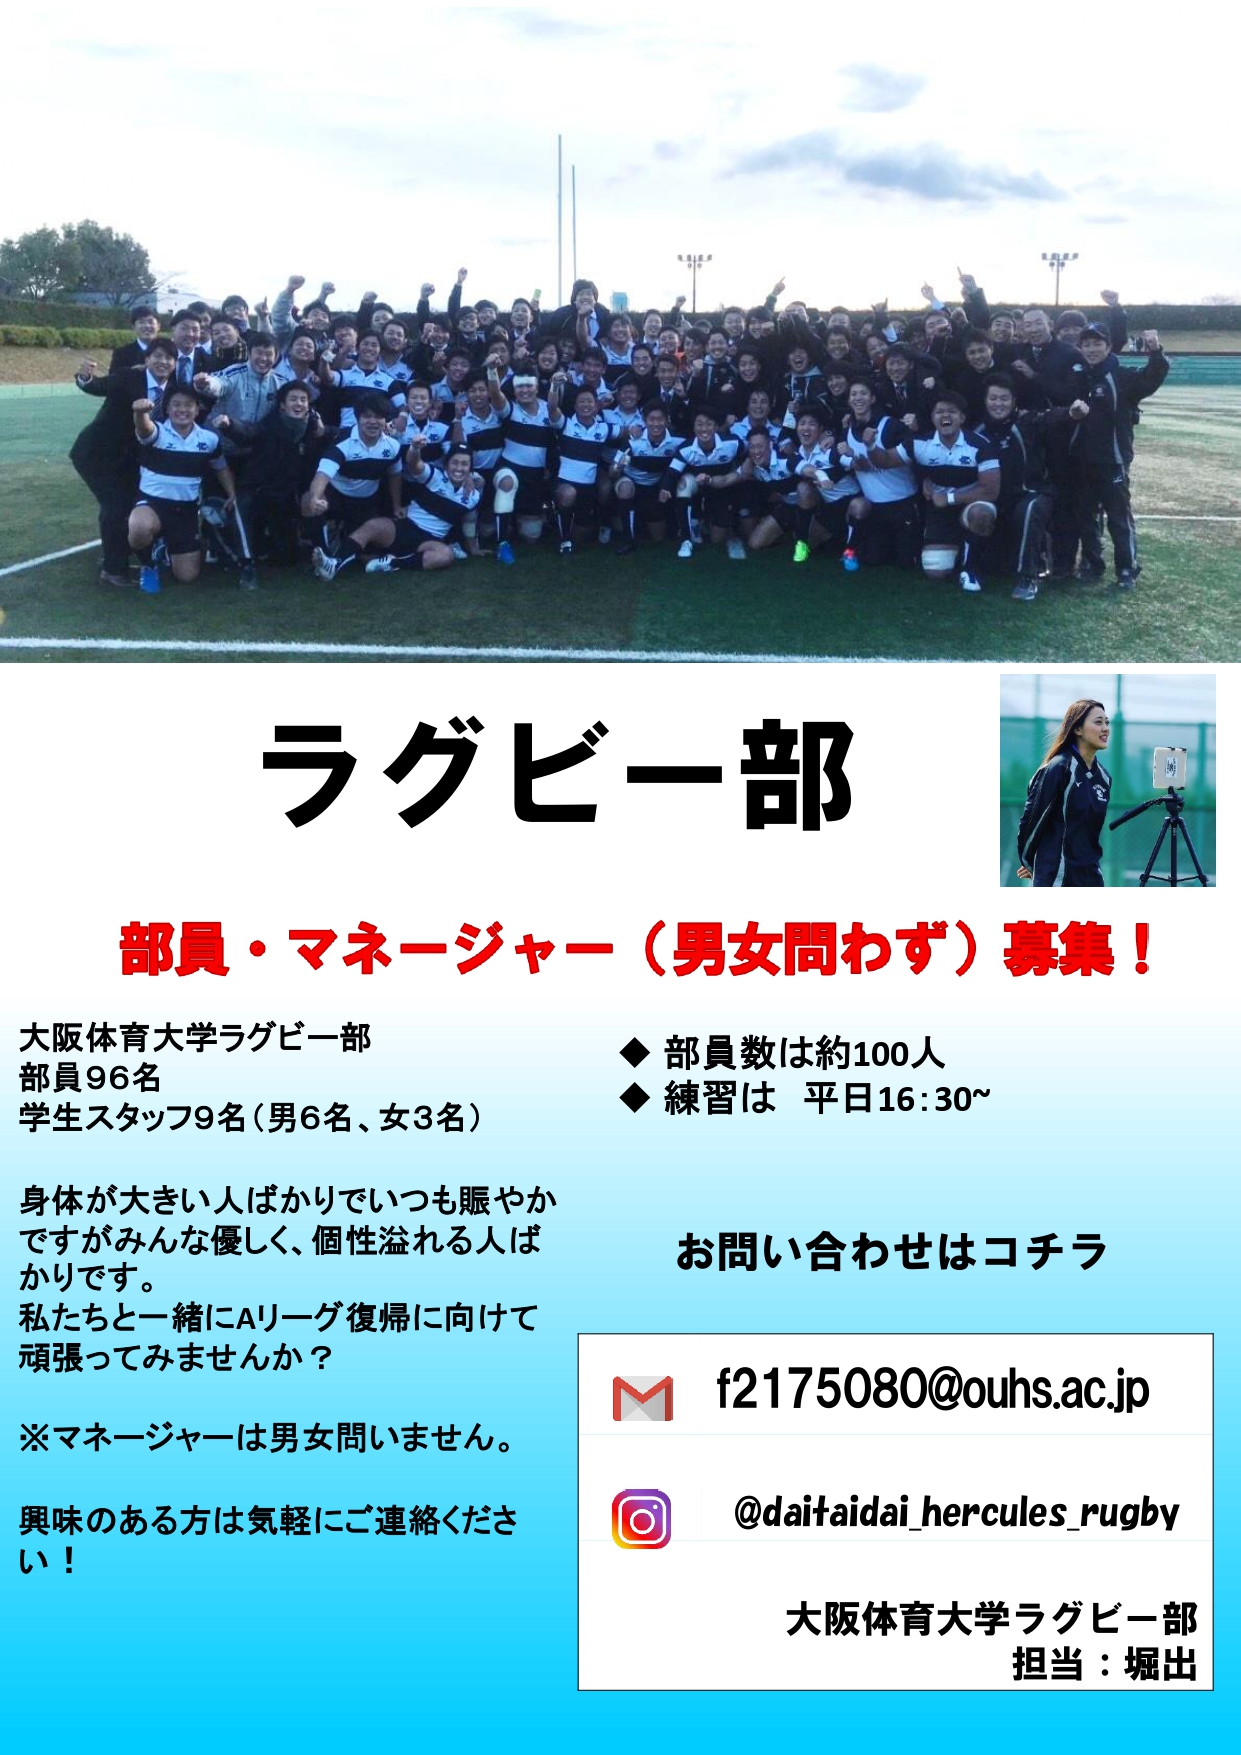 各クラブが部員を大募集 大阪体育大学